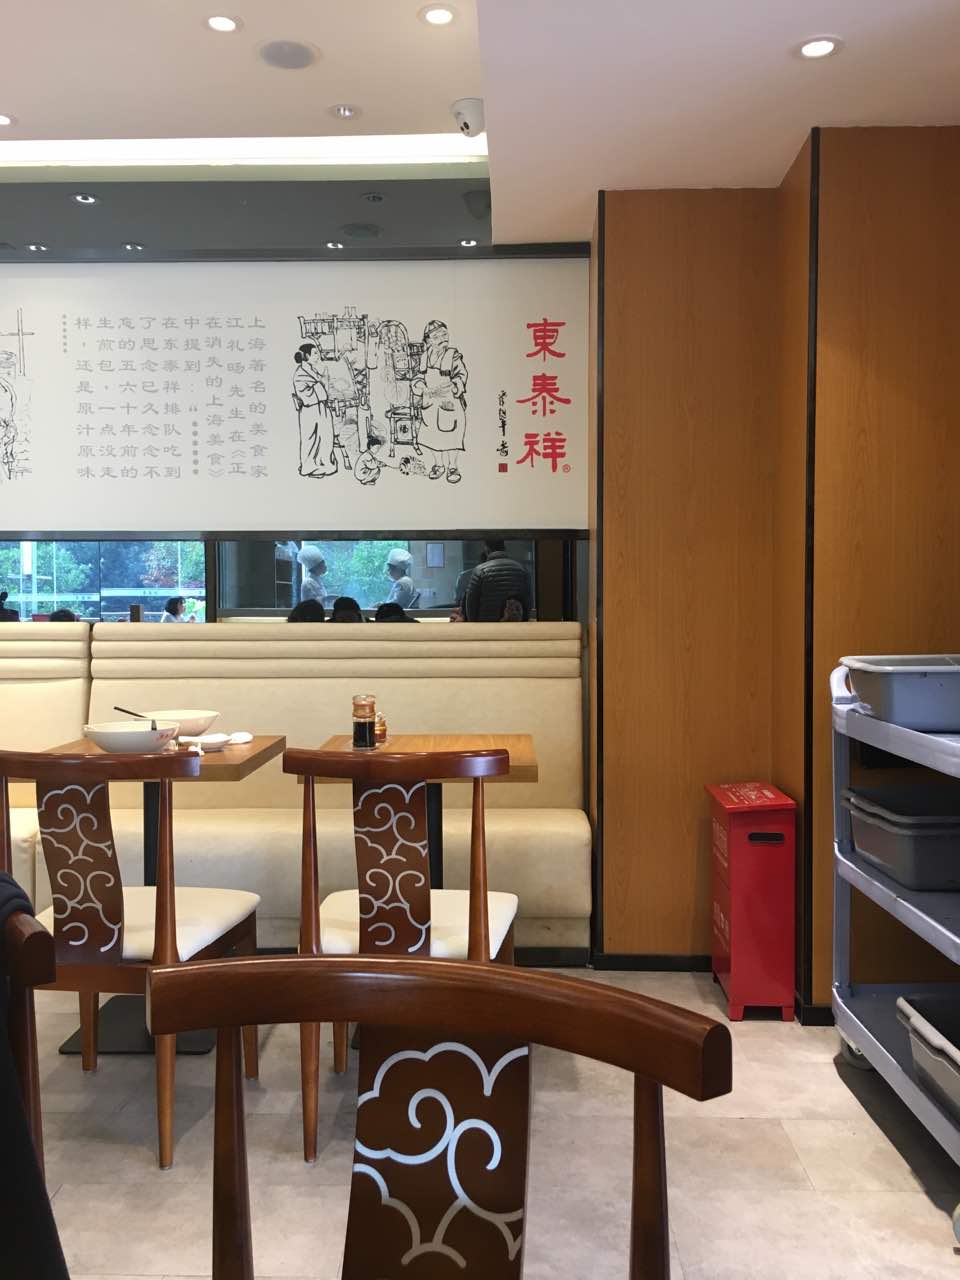 东泰祥生煎馆总店图片